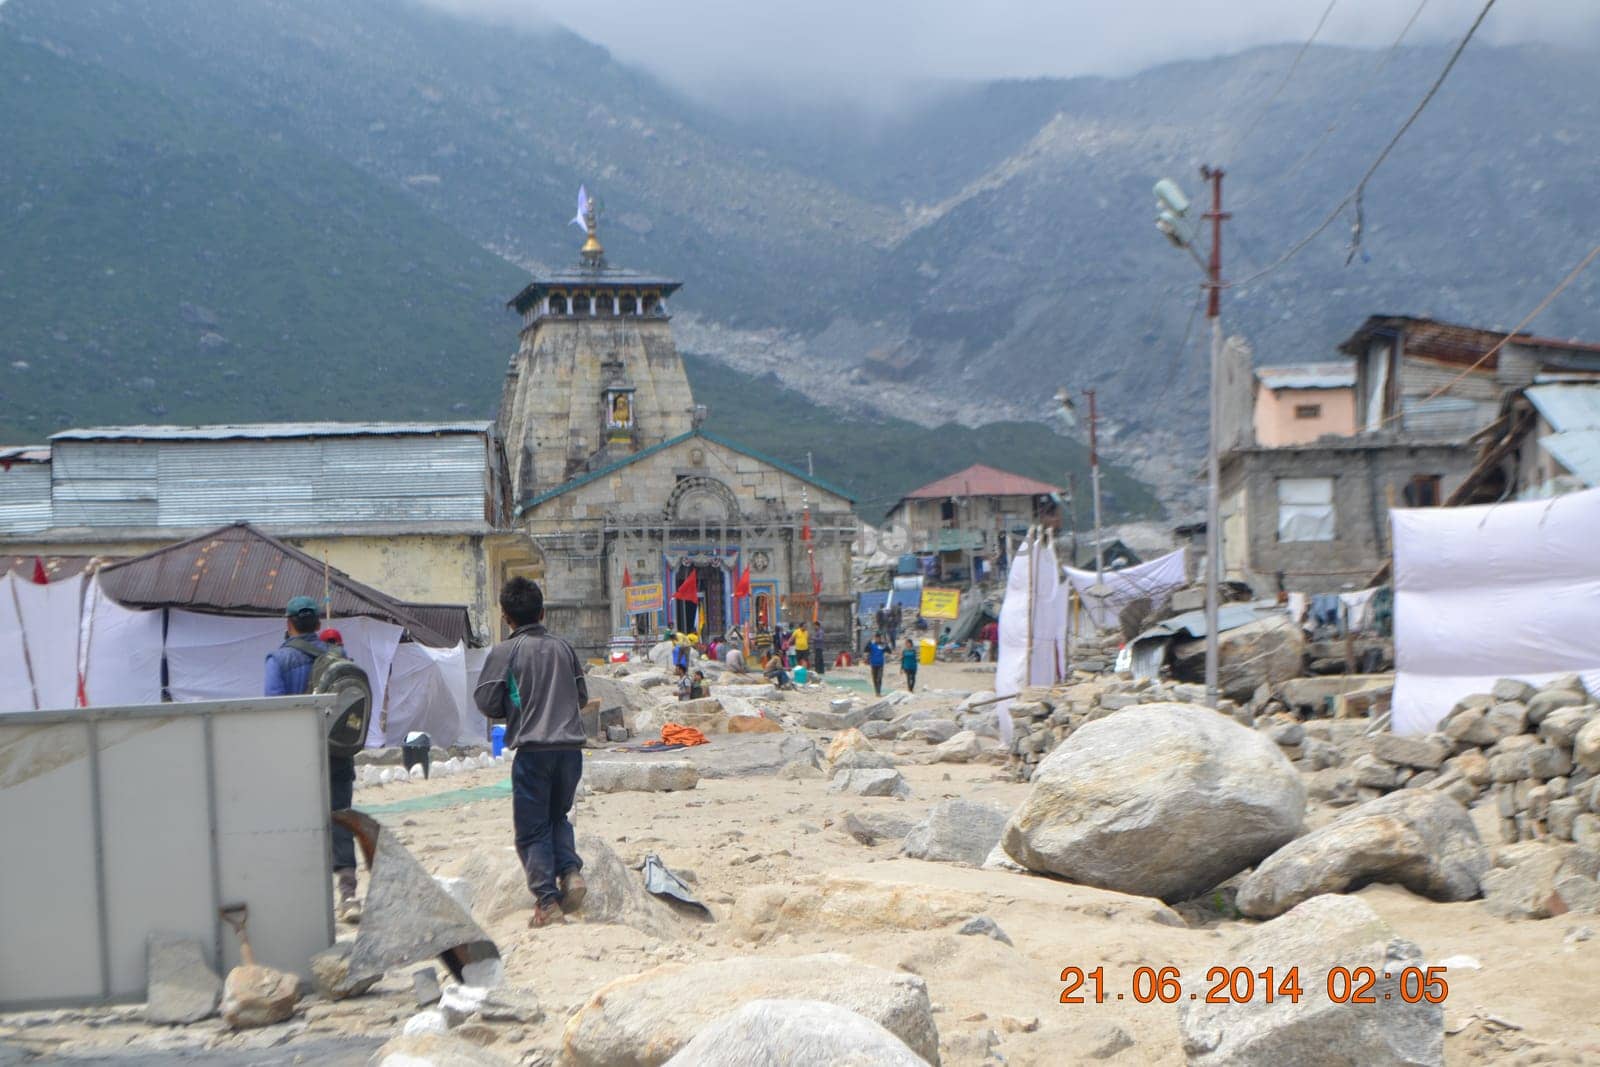 Kedarnath temple after Kedarnath disaster in 2013. by stocksvids